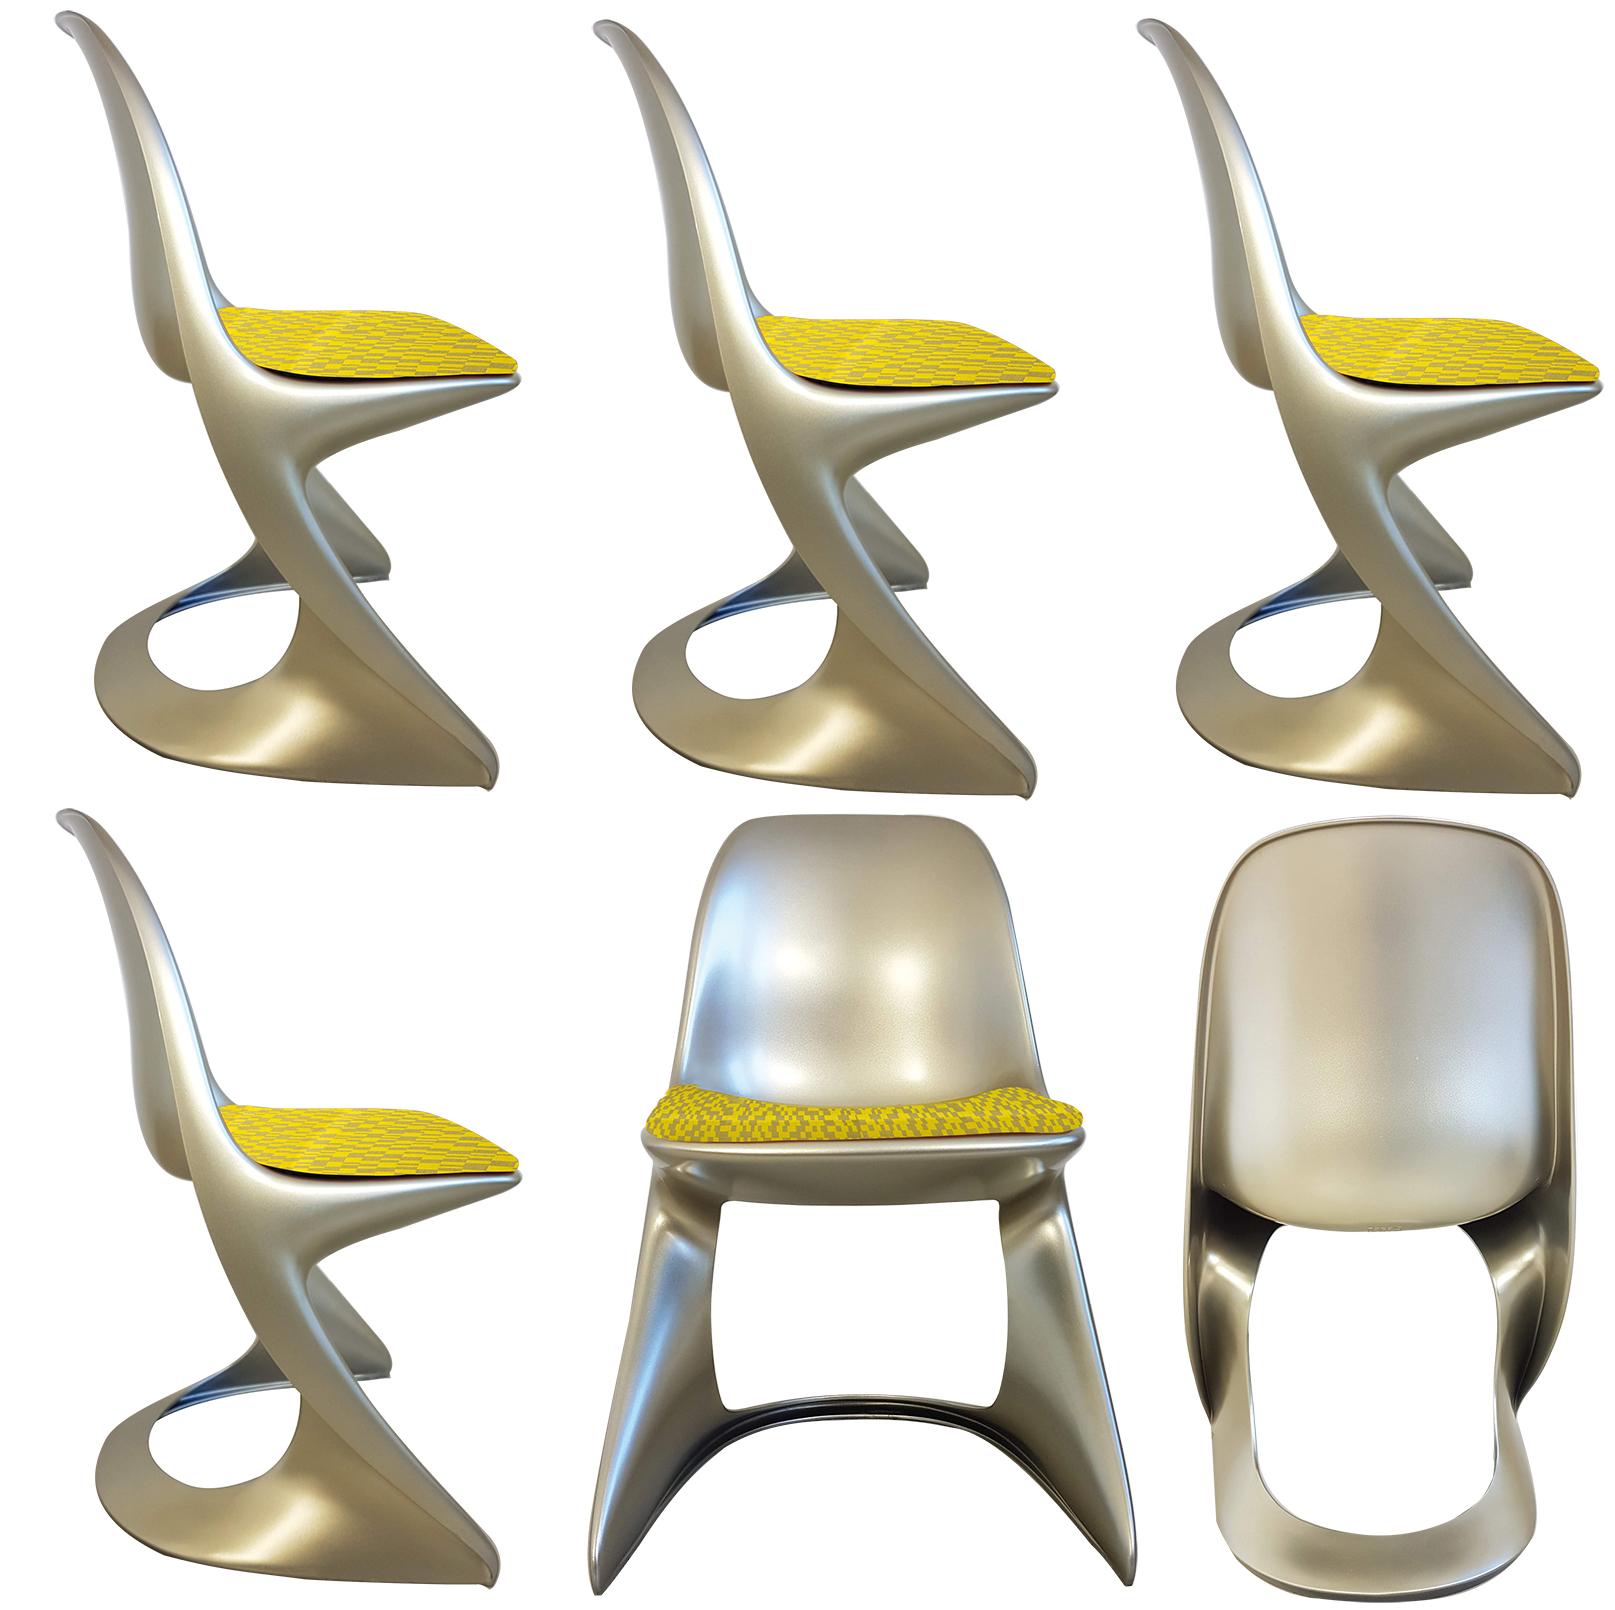 Inusual conjunto de sillas Ostergaard de polietileno lacado en color metálico fabricadas por moldeo rotacional fijas (uso interior/exterior) con asientos nuevos de tela textil jacquard de tejido geométrico 